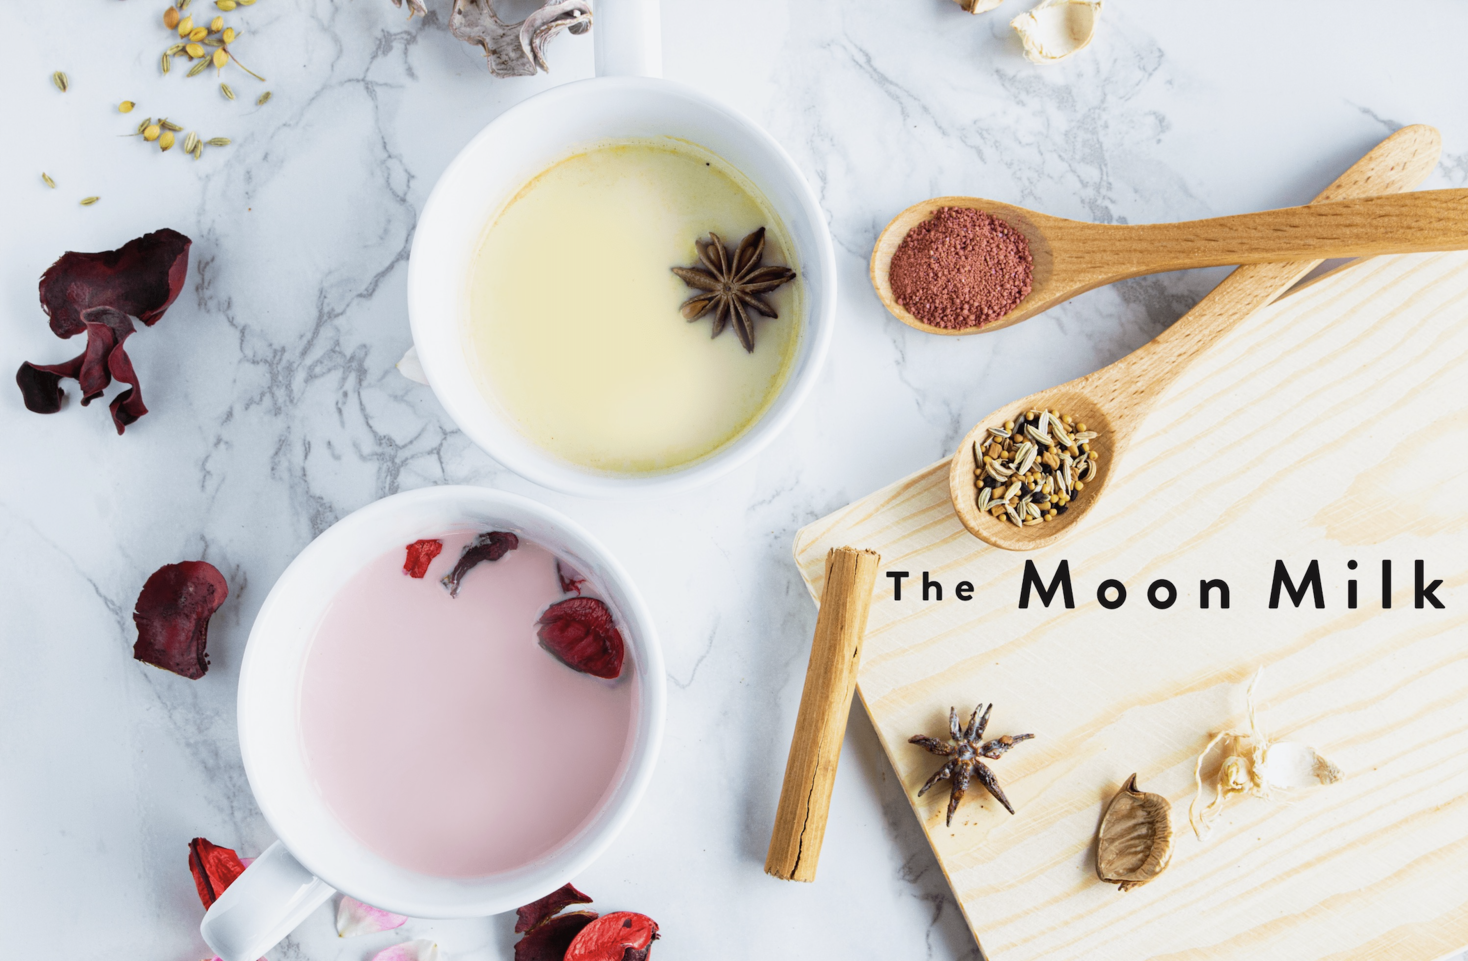 日本初 ムーンミルクで不眠解消 海外で話題のホットドリンクを日本規格で The Moon Milk Fun Recipeのプレスリリース